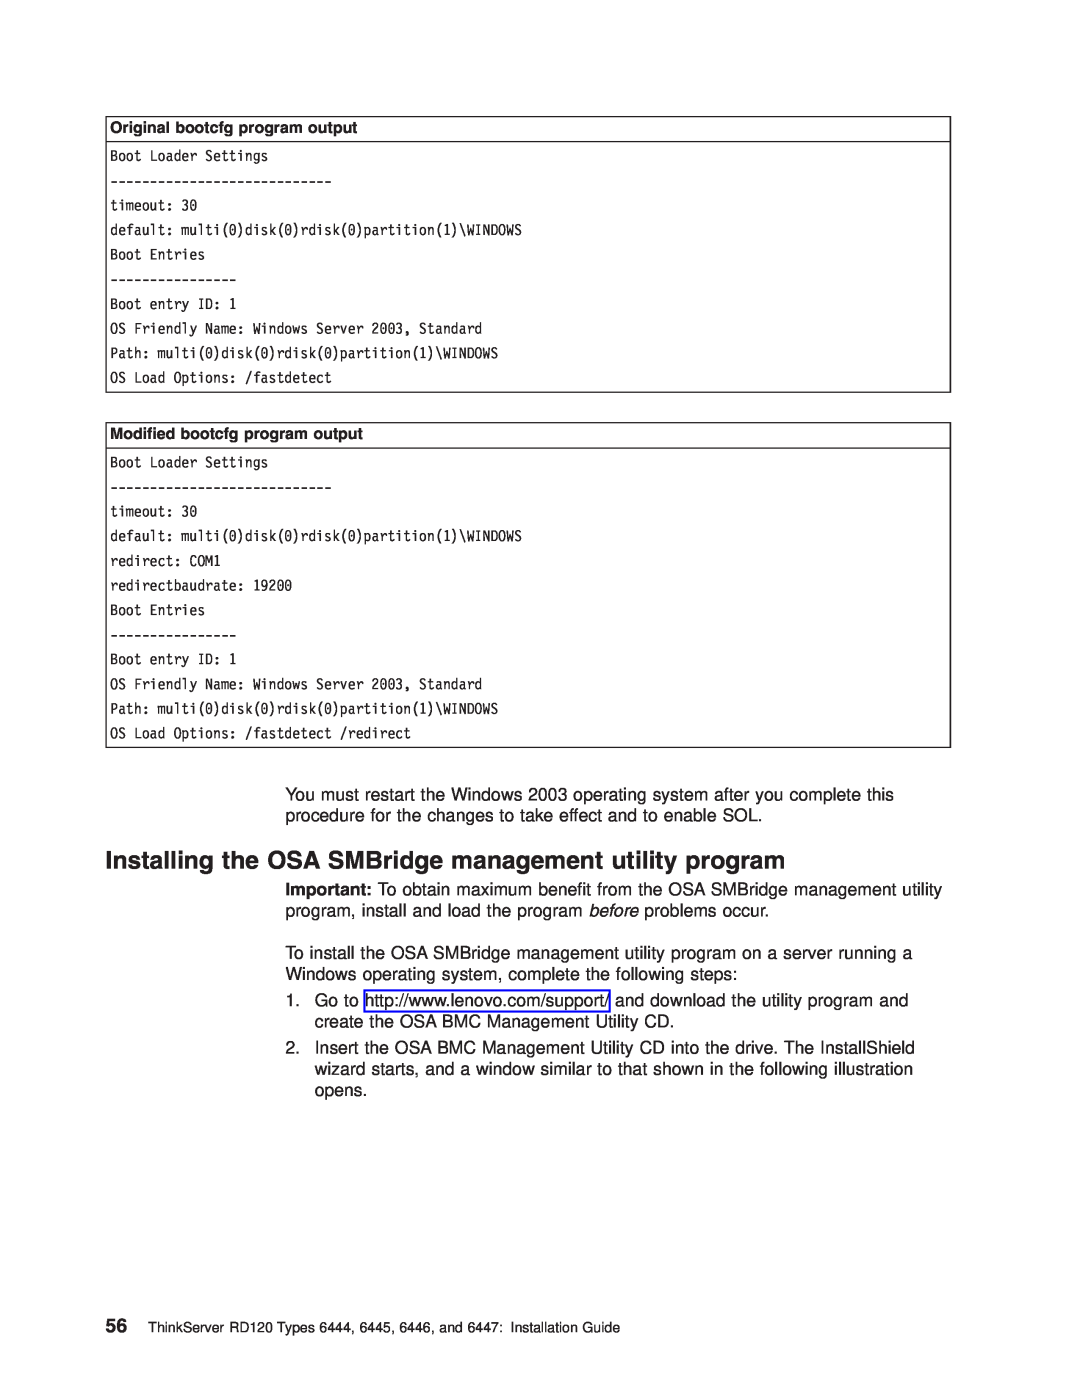 Lenovo 6445, 6447, 6446, 6444 manual Installing the OSA SMBridge management utility program 